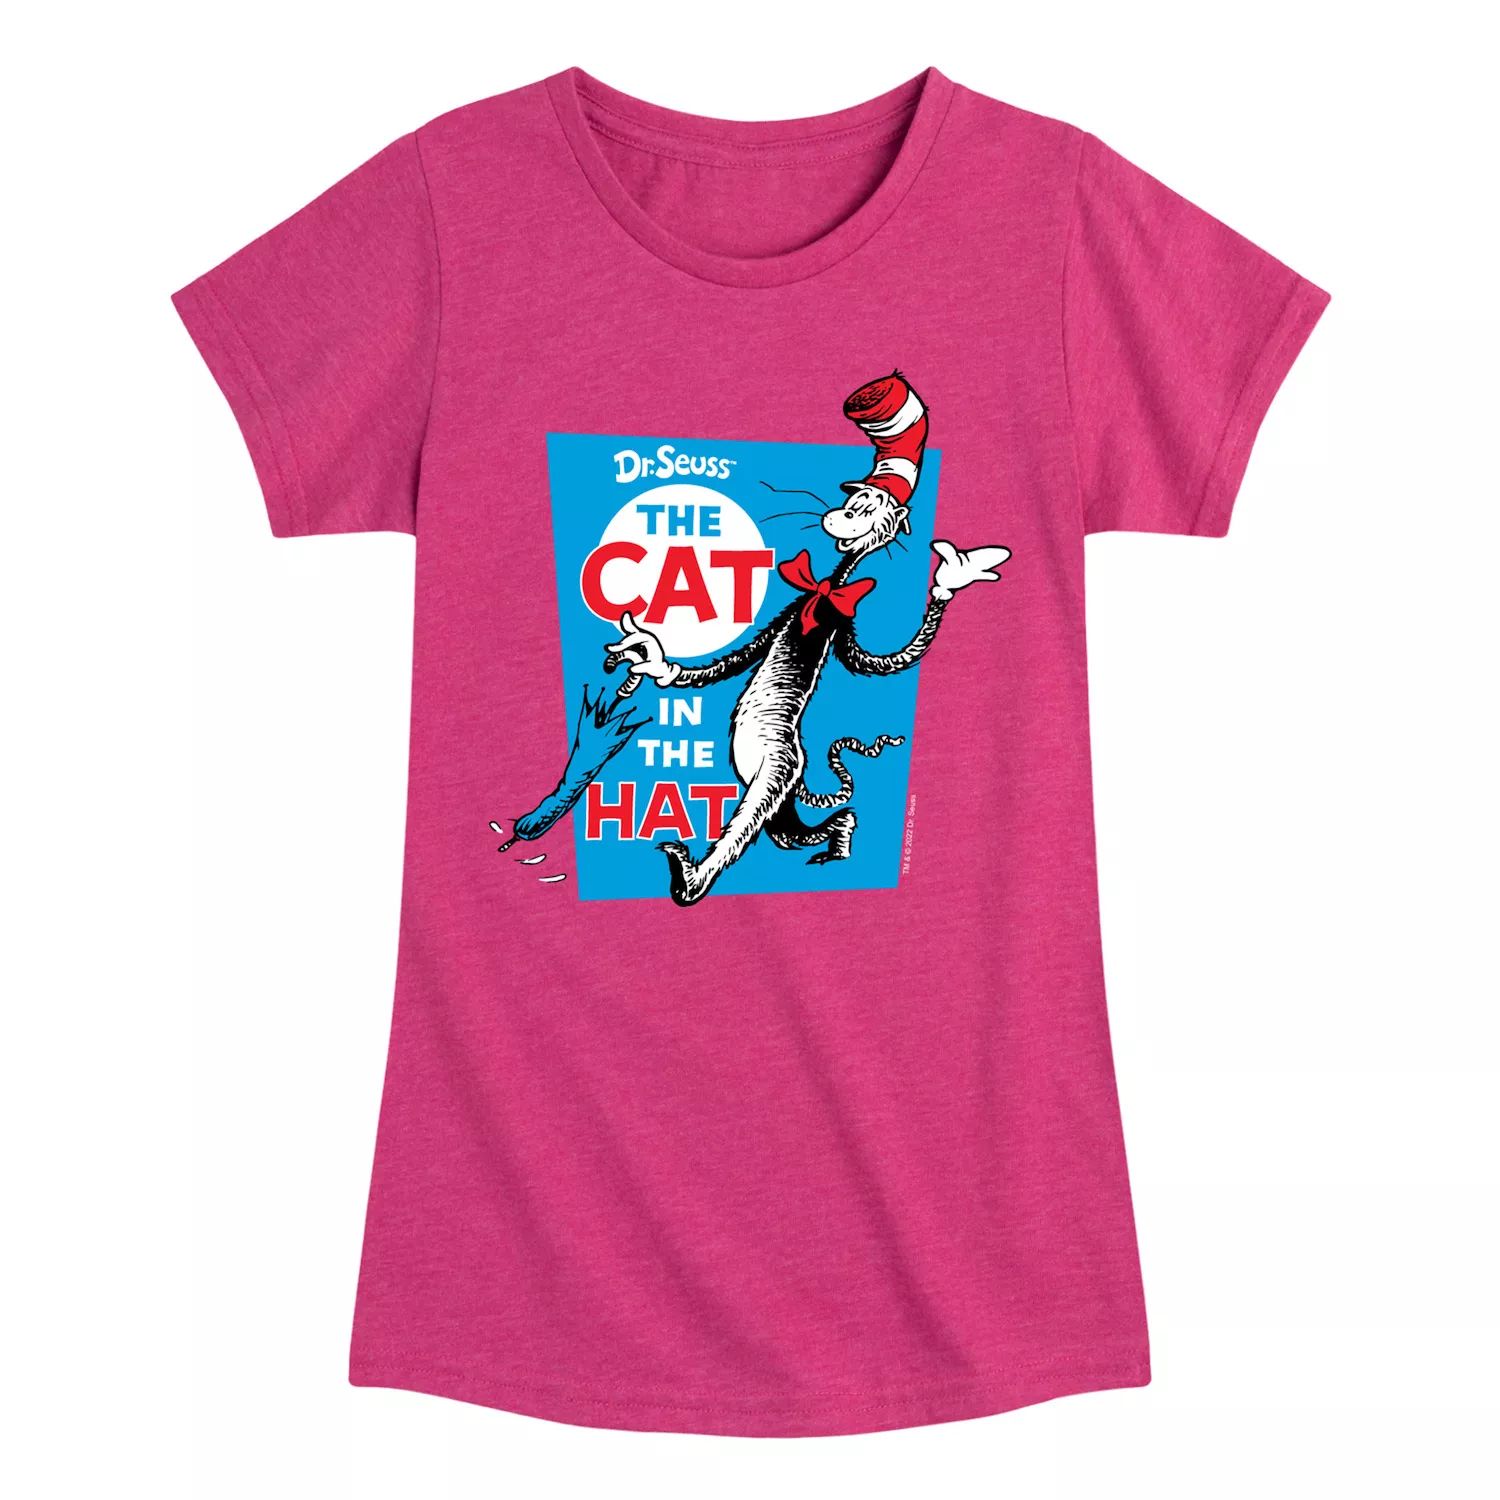 Футболка с рисунком «Кот в шляпе» для девочек 7–16 лет «Доктор Сьюз» Licensed Character, ярко-розовый девочки 7–16 лет доктор сьюз я отправляюсь в прекрасные места футболка с графическим рисунком dr seuss